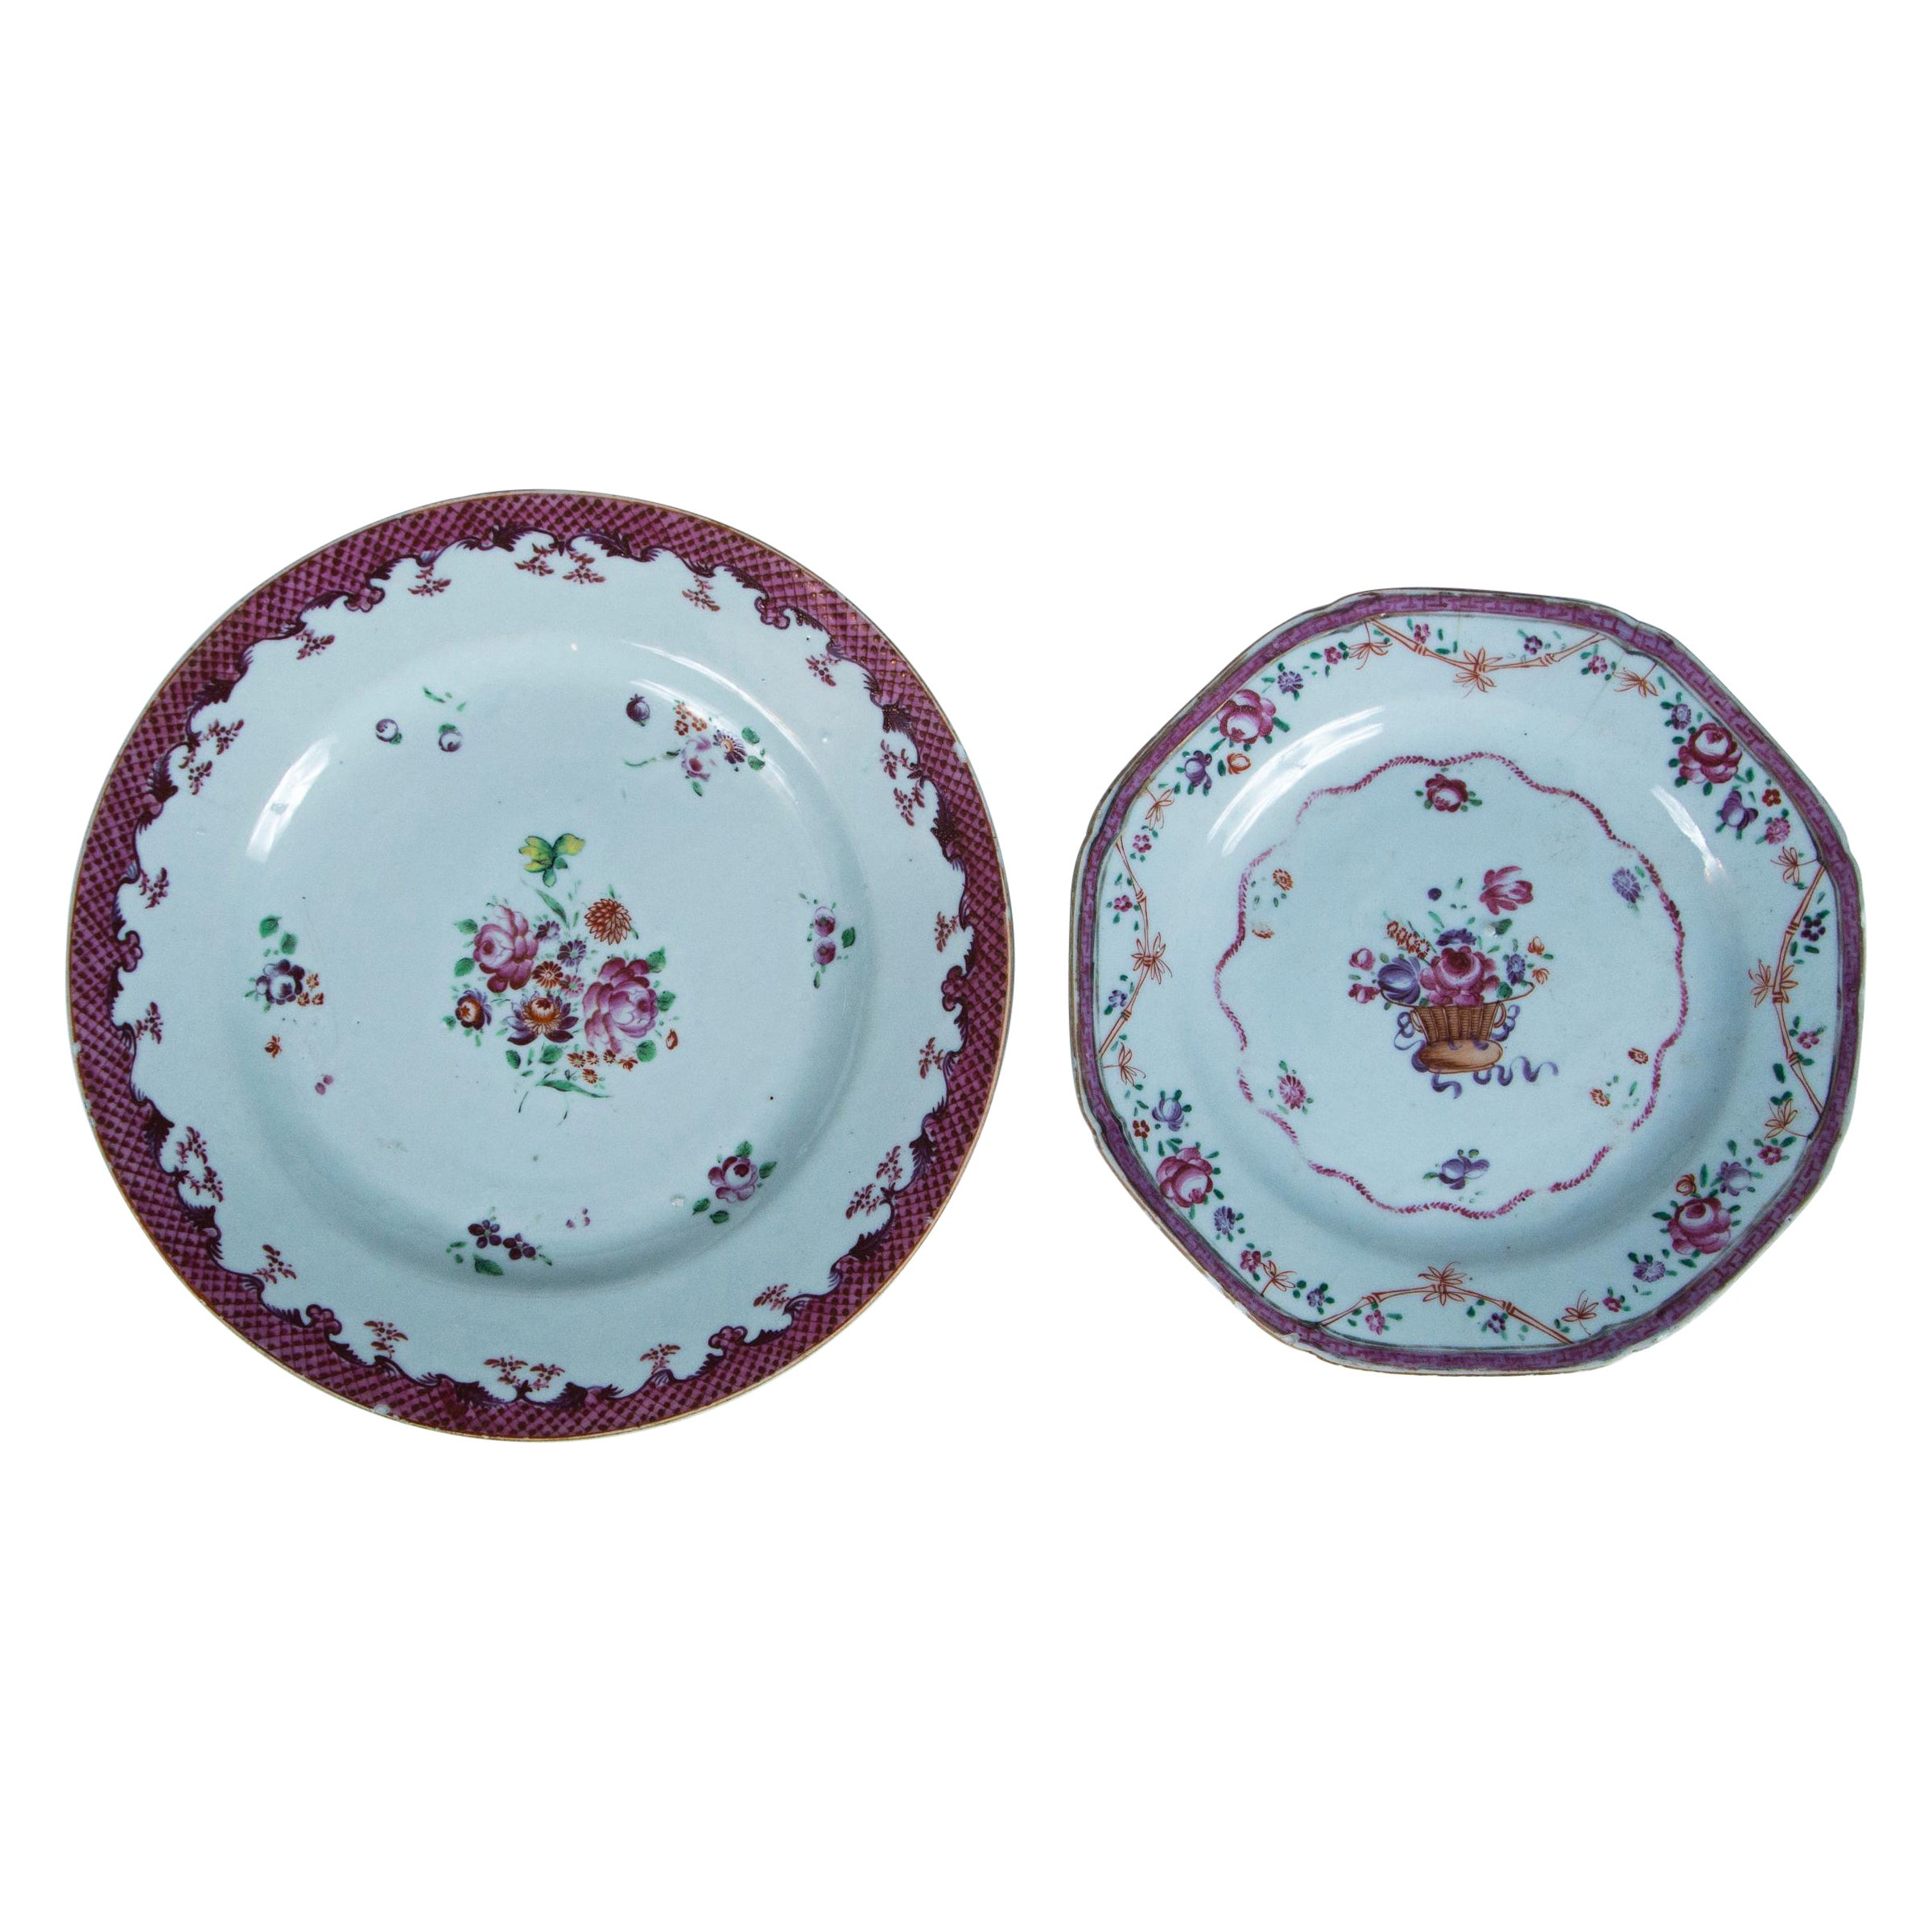 Deux assiettes en porcelaine d'exportation chinoise, début du 19ème siècle